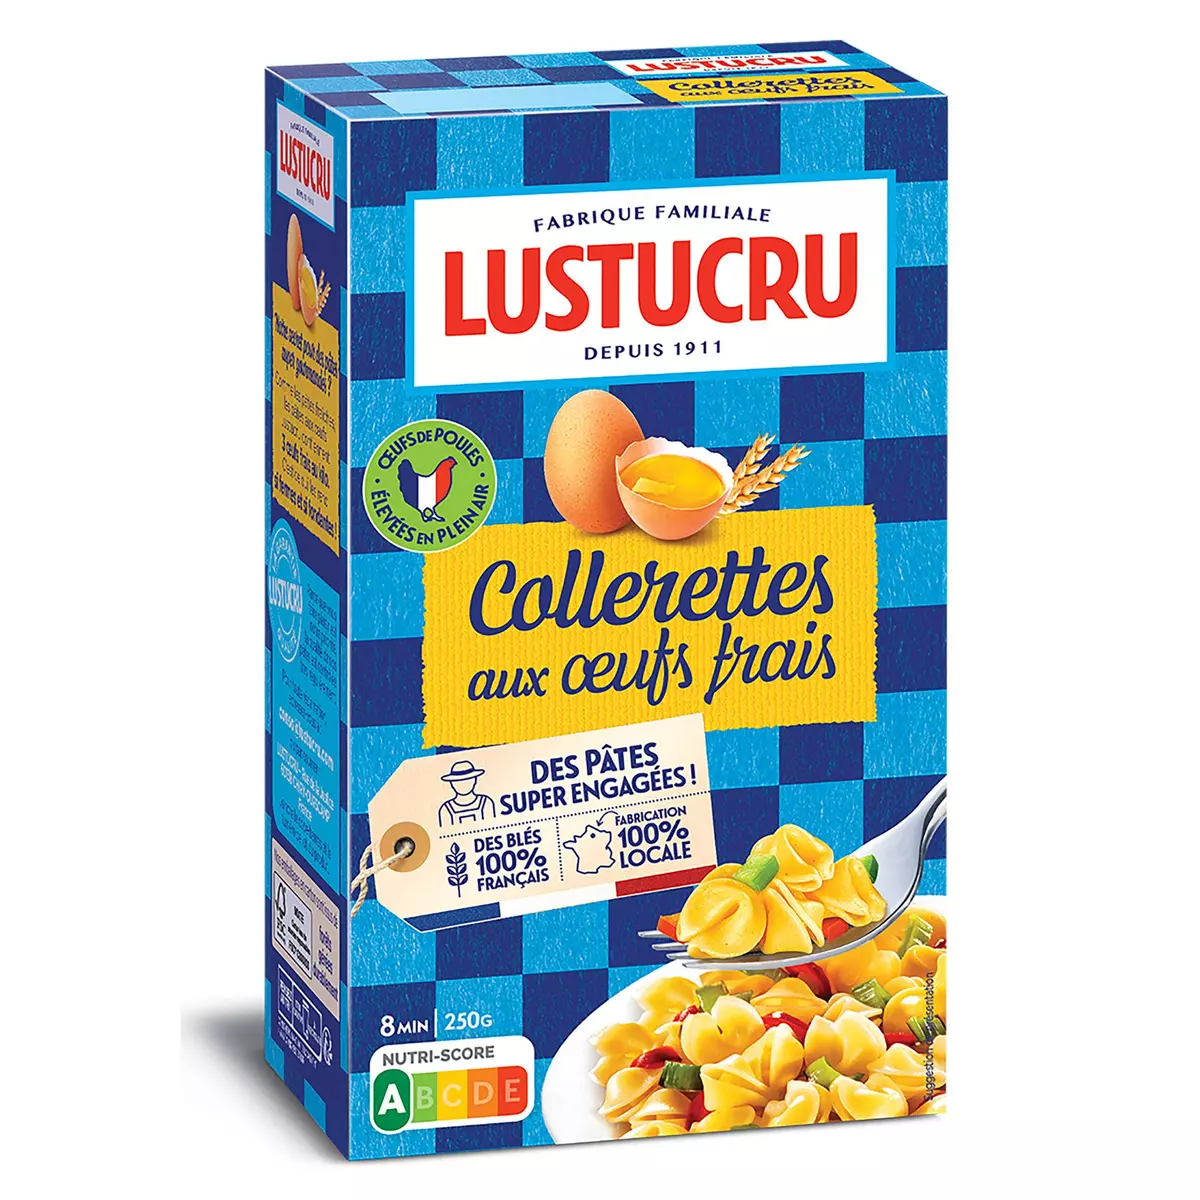 LUSTUCRU Collerettes aux œufs frais fabriqué en France 250g